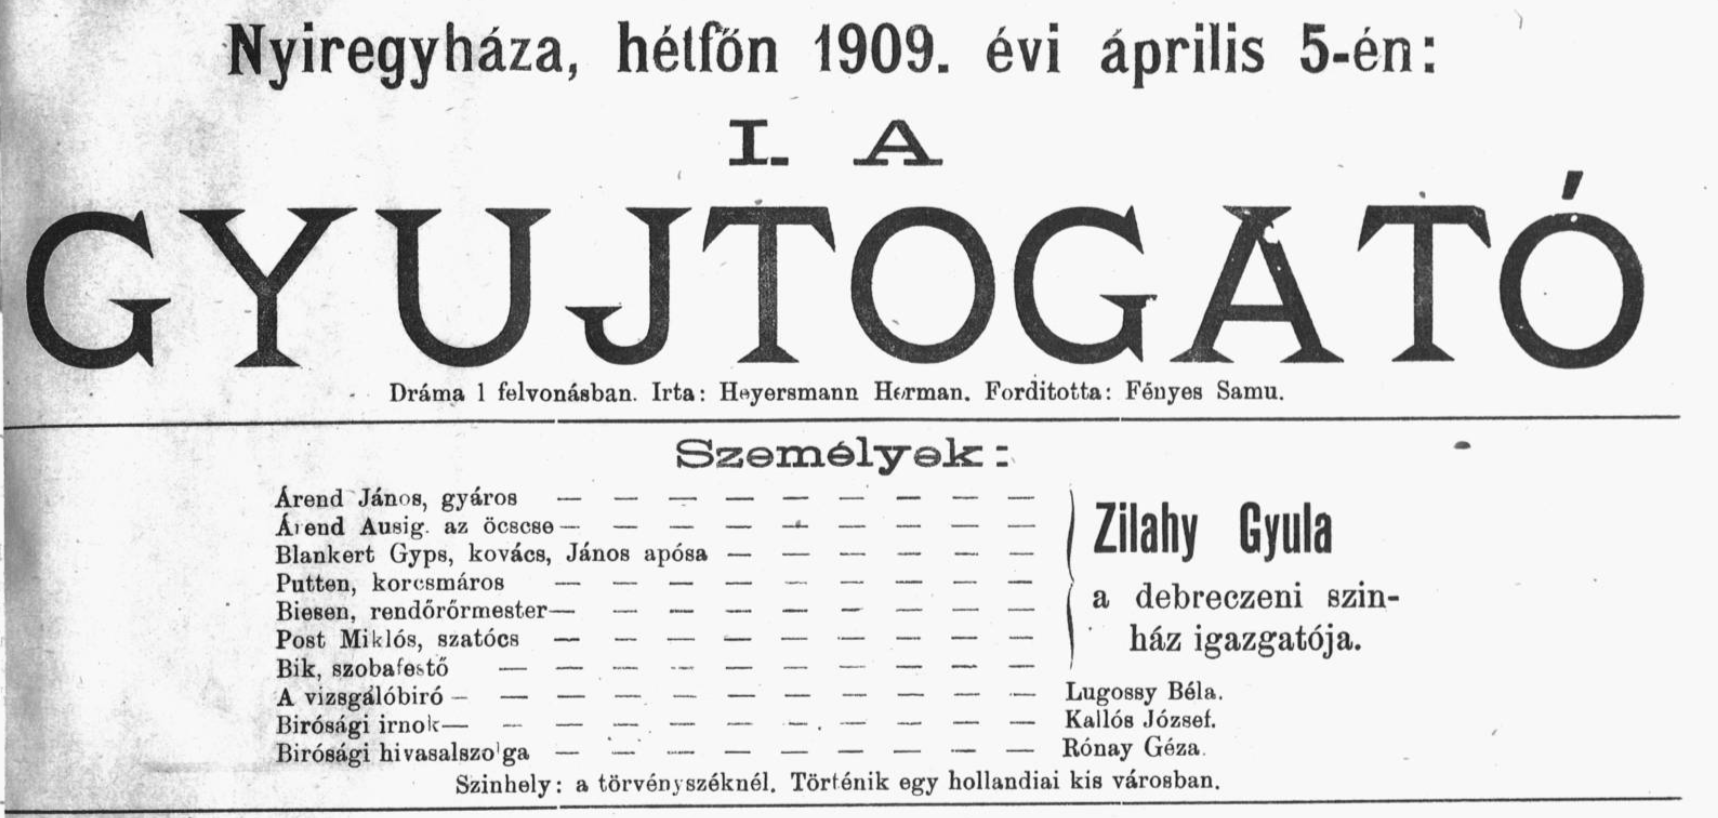 1909.04.5 - a gyjtogato (NYIREGYHAZA) - bibPLA00006373.png